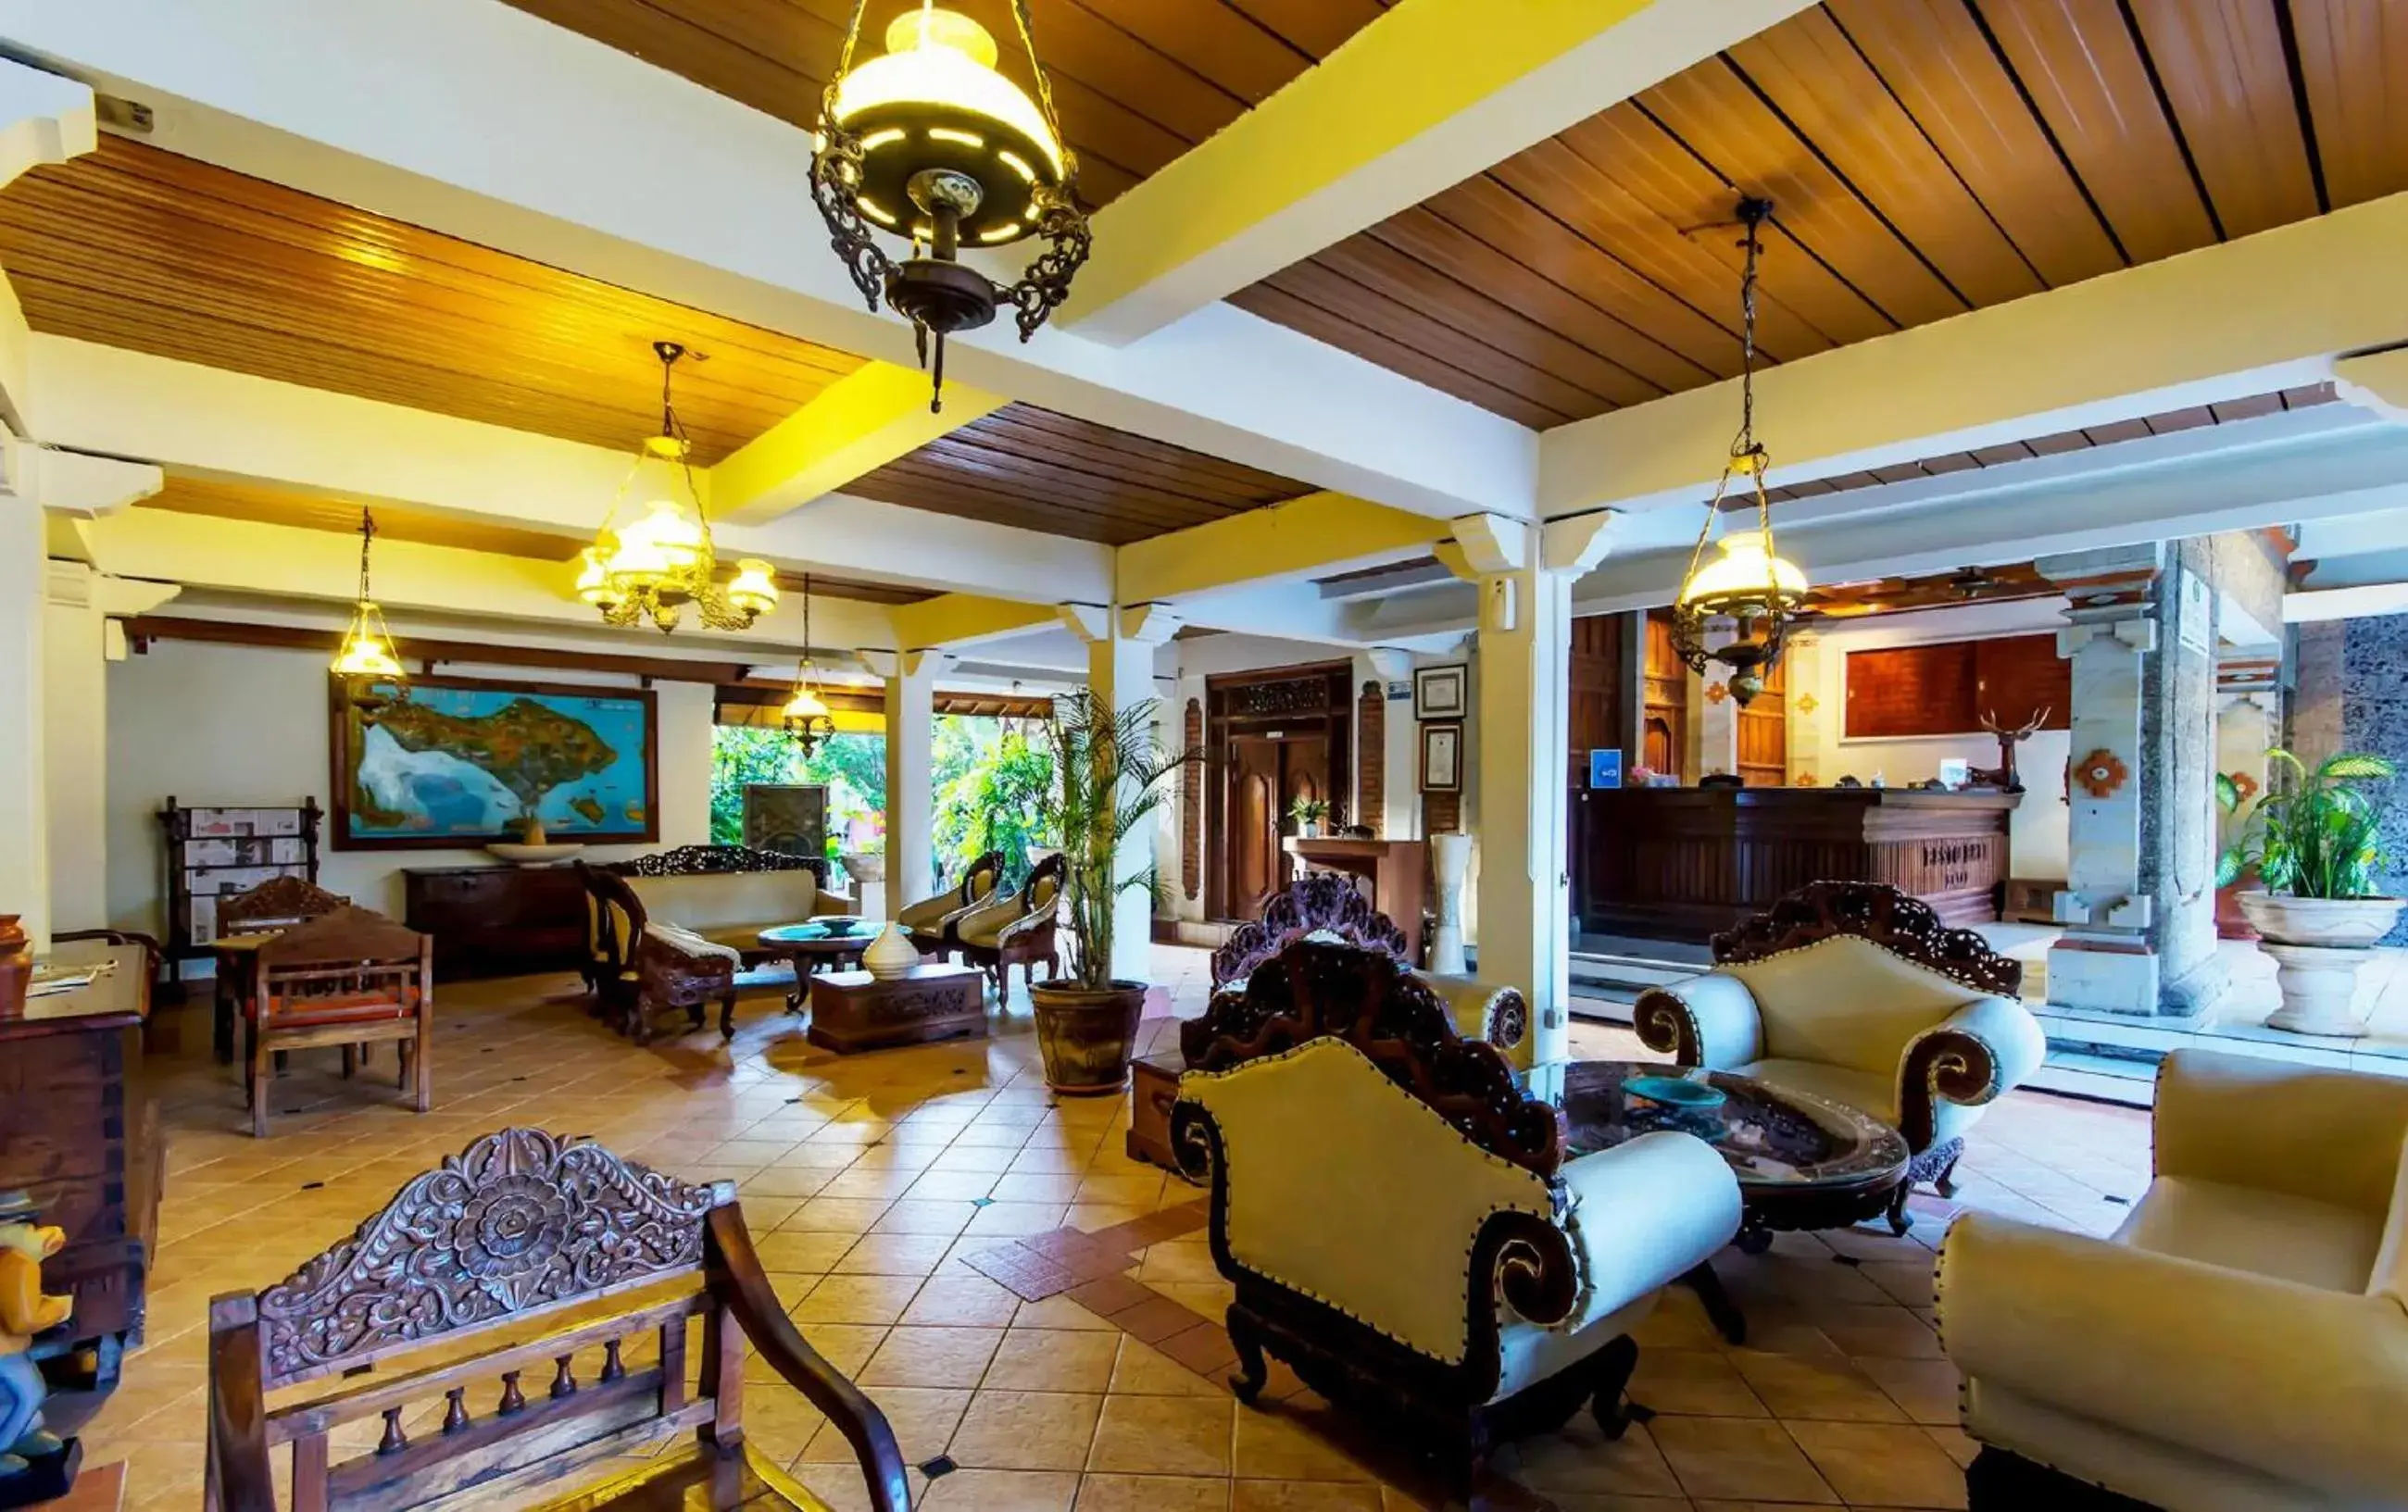 Lobby or reception in Restu Bali Hotel